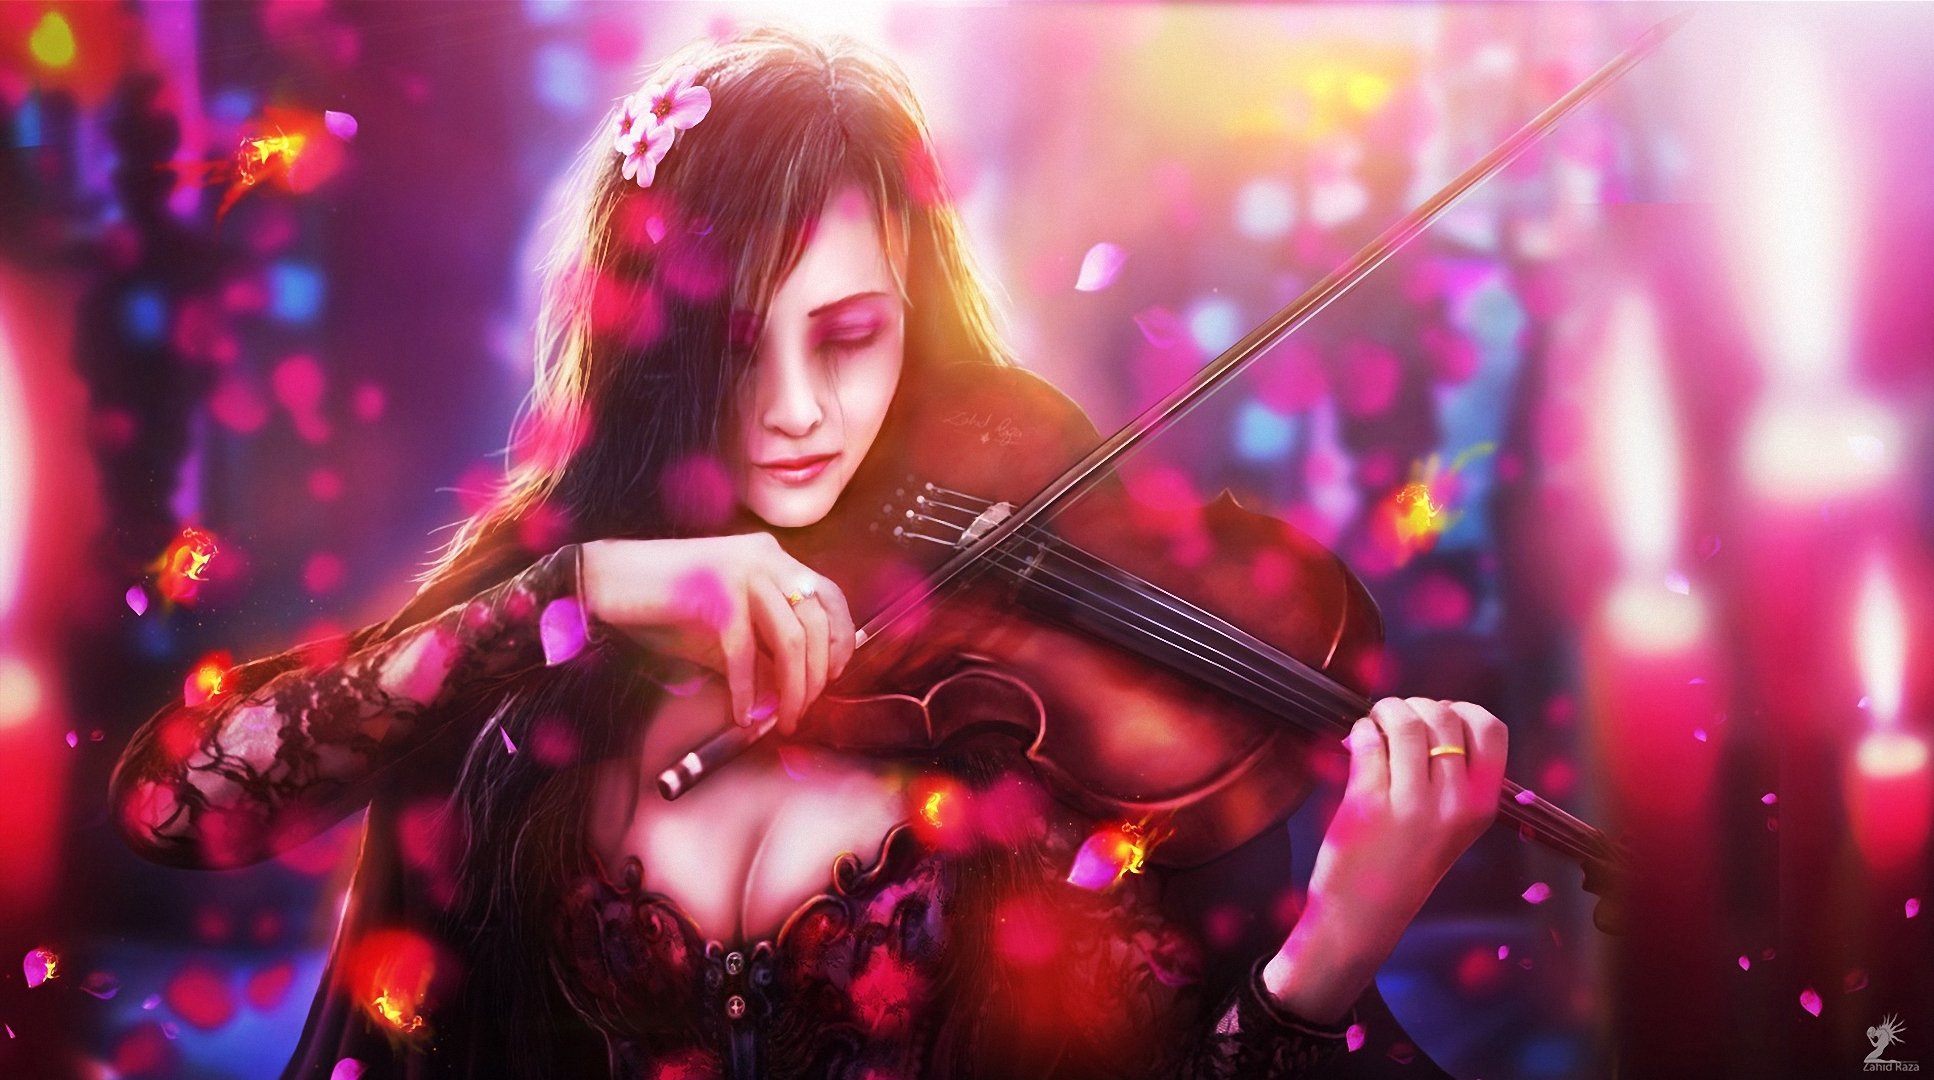 art, Fish, Flowers, Sorrow, Girl, Violin Wallpaper